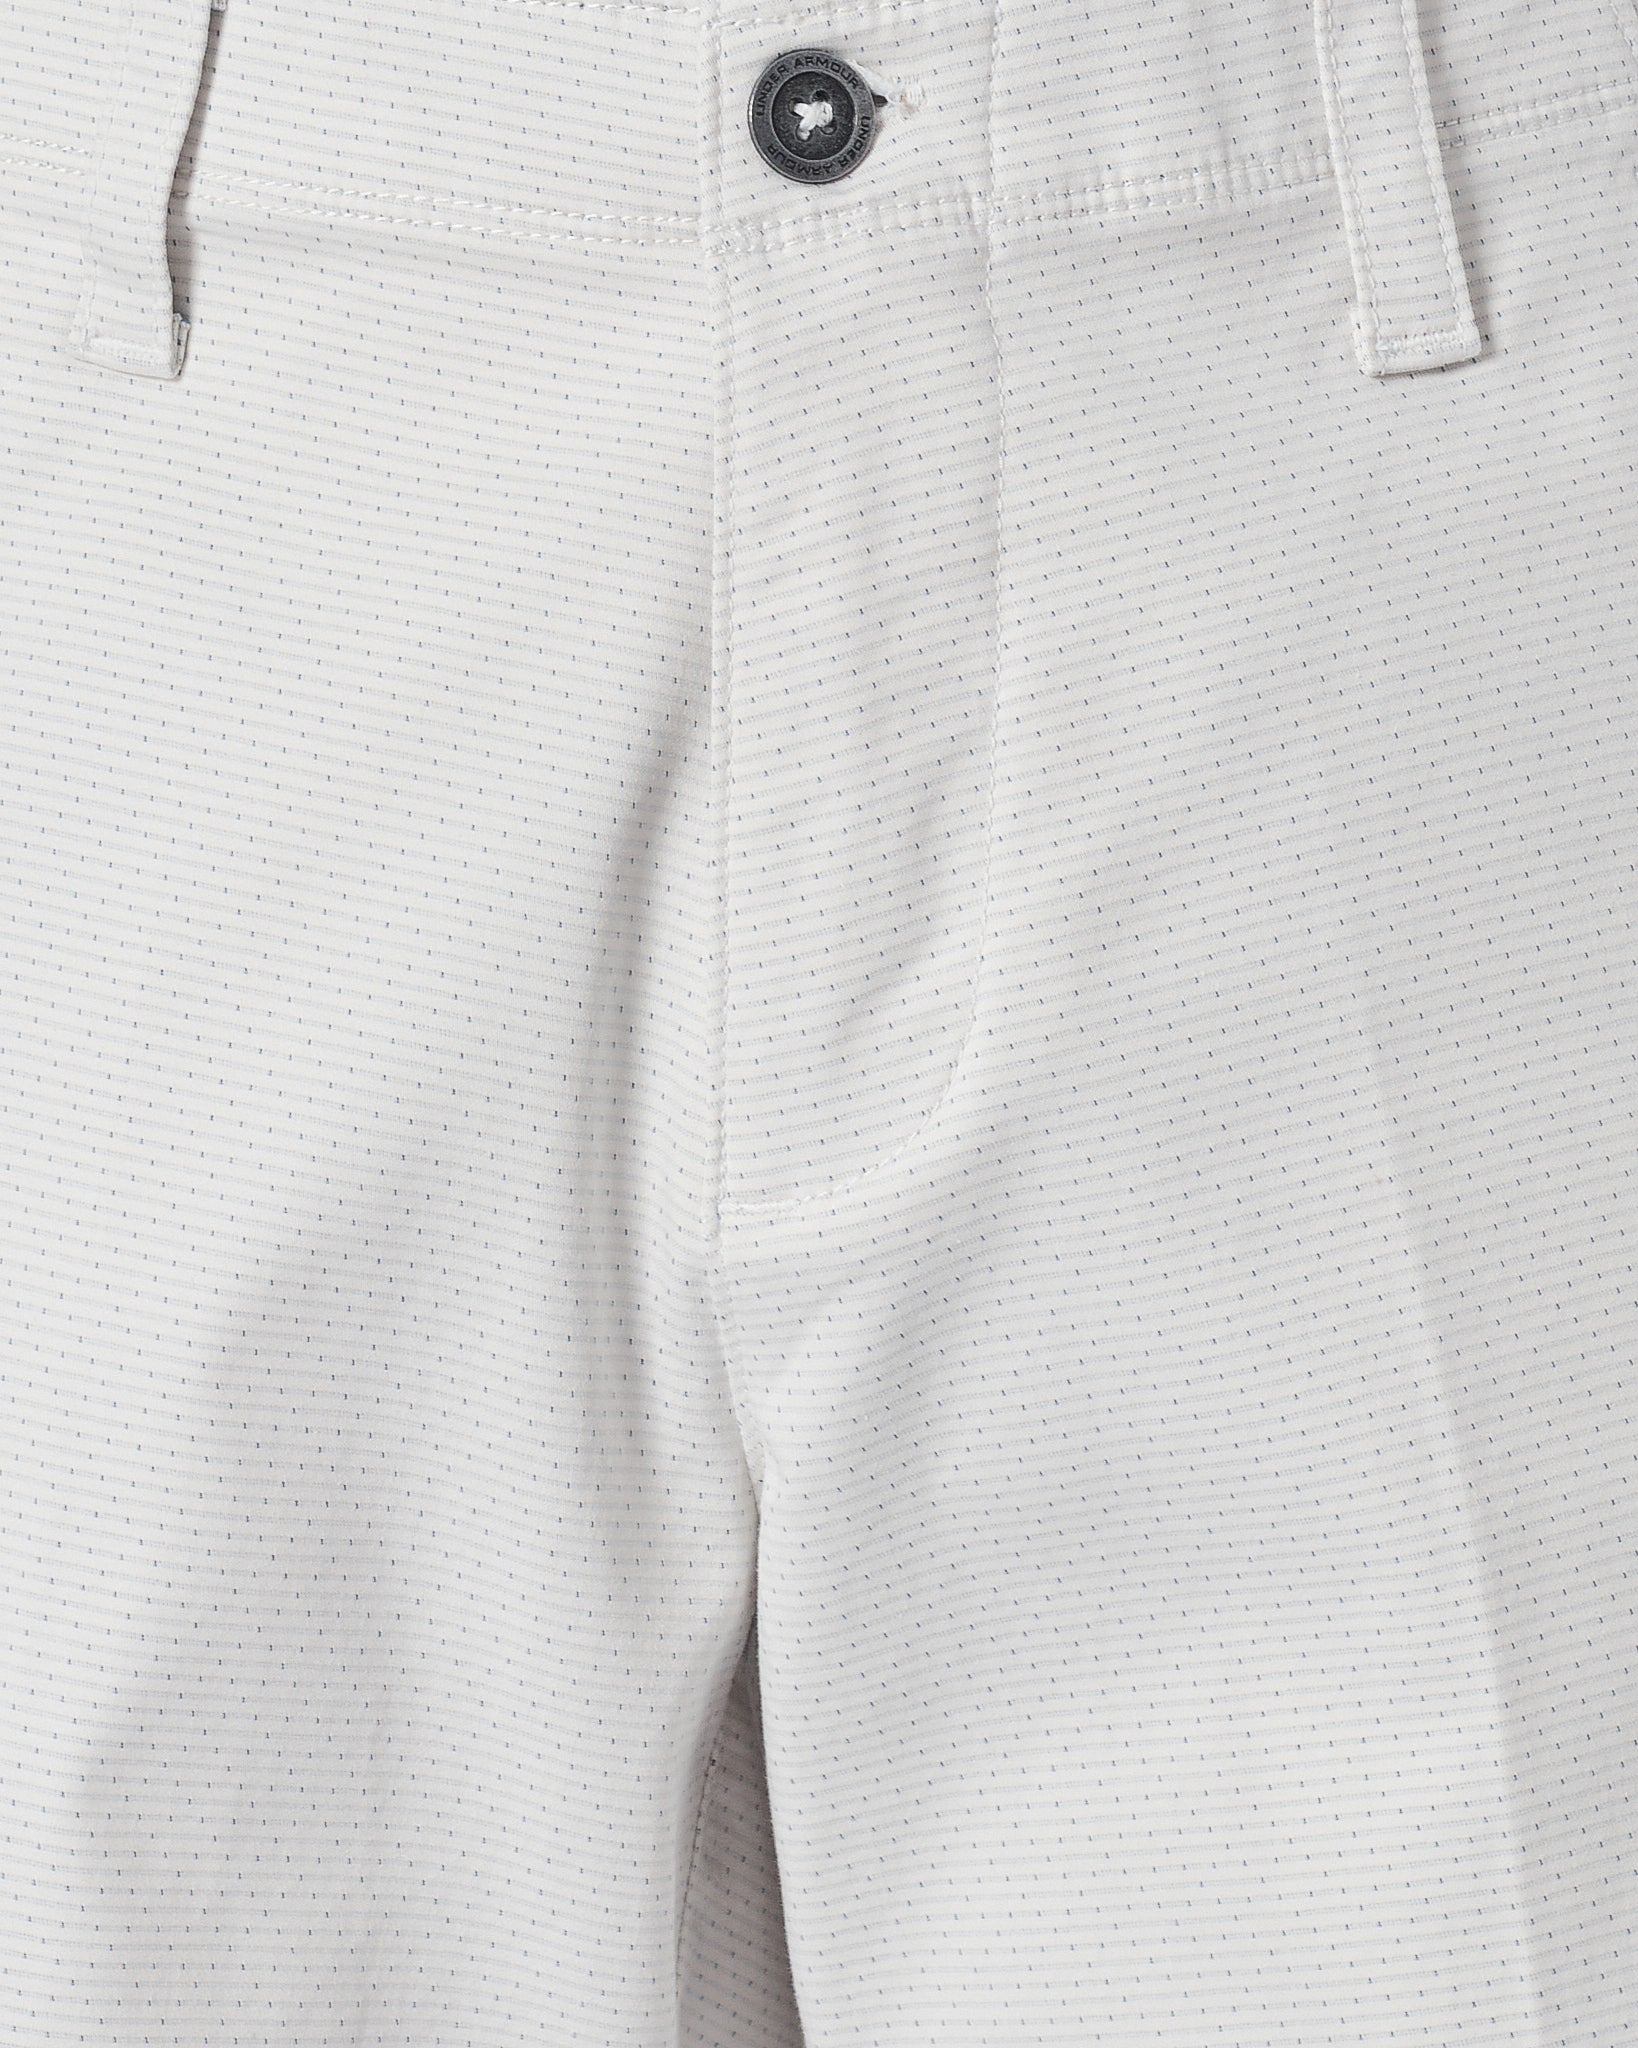 UA Dots Over Printed Men Short Pants 18.50